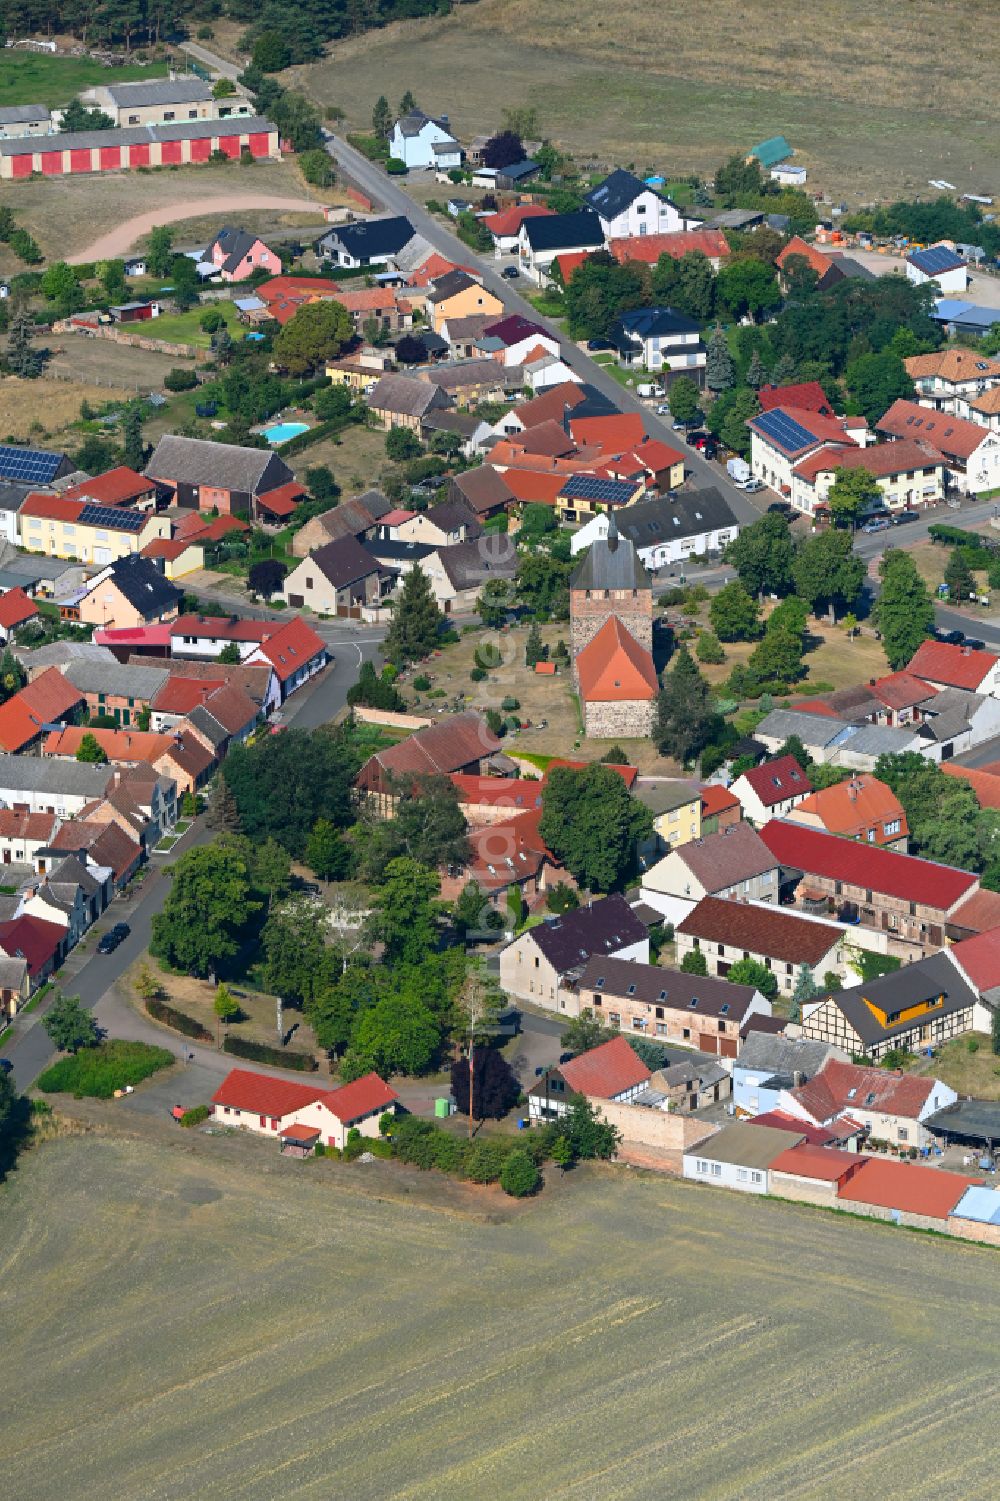 Luftaufnahme Linthe - Dorfkern am Feldrand in Linthe im Bundesland Brandenburg, Deutschland